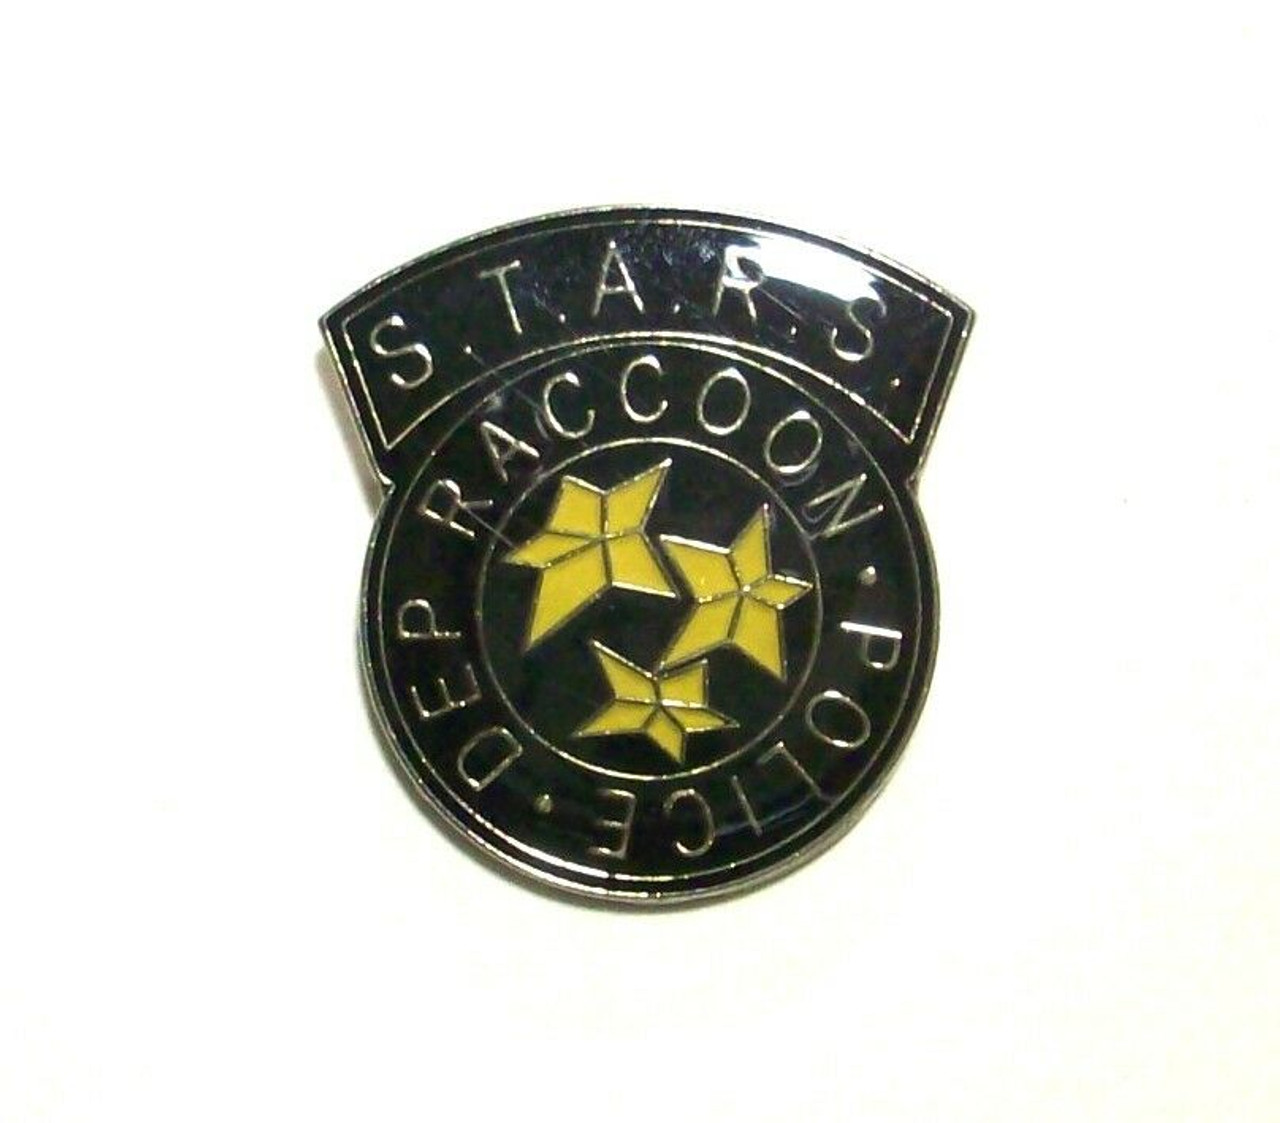 Resident Evil Umbrella Corporation Umbrella S.T.A.R.S. Raccoon Police Metal  Pins